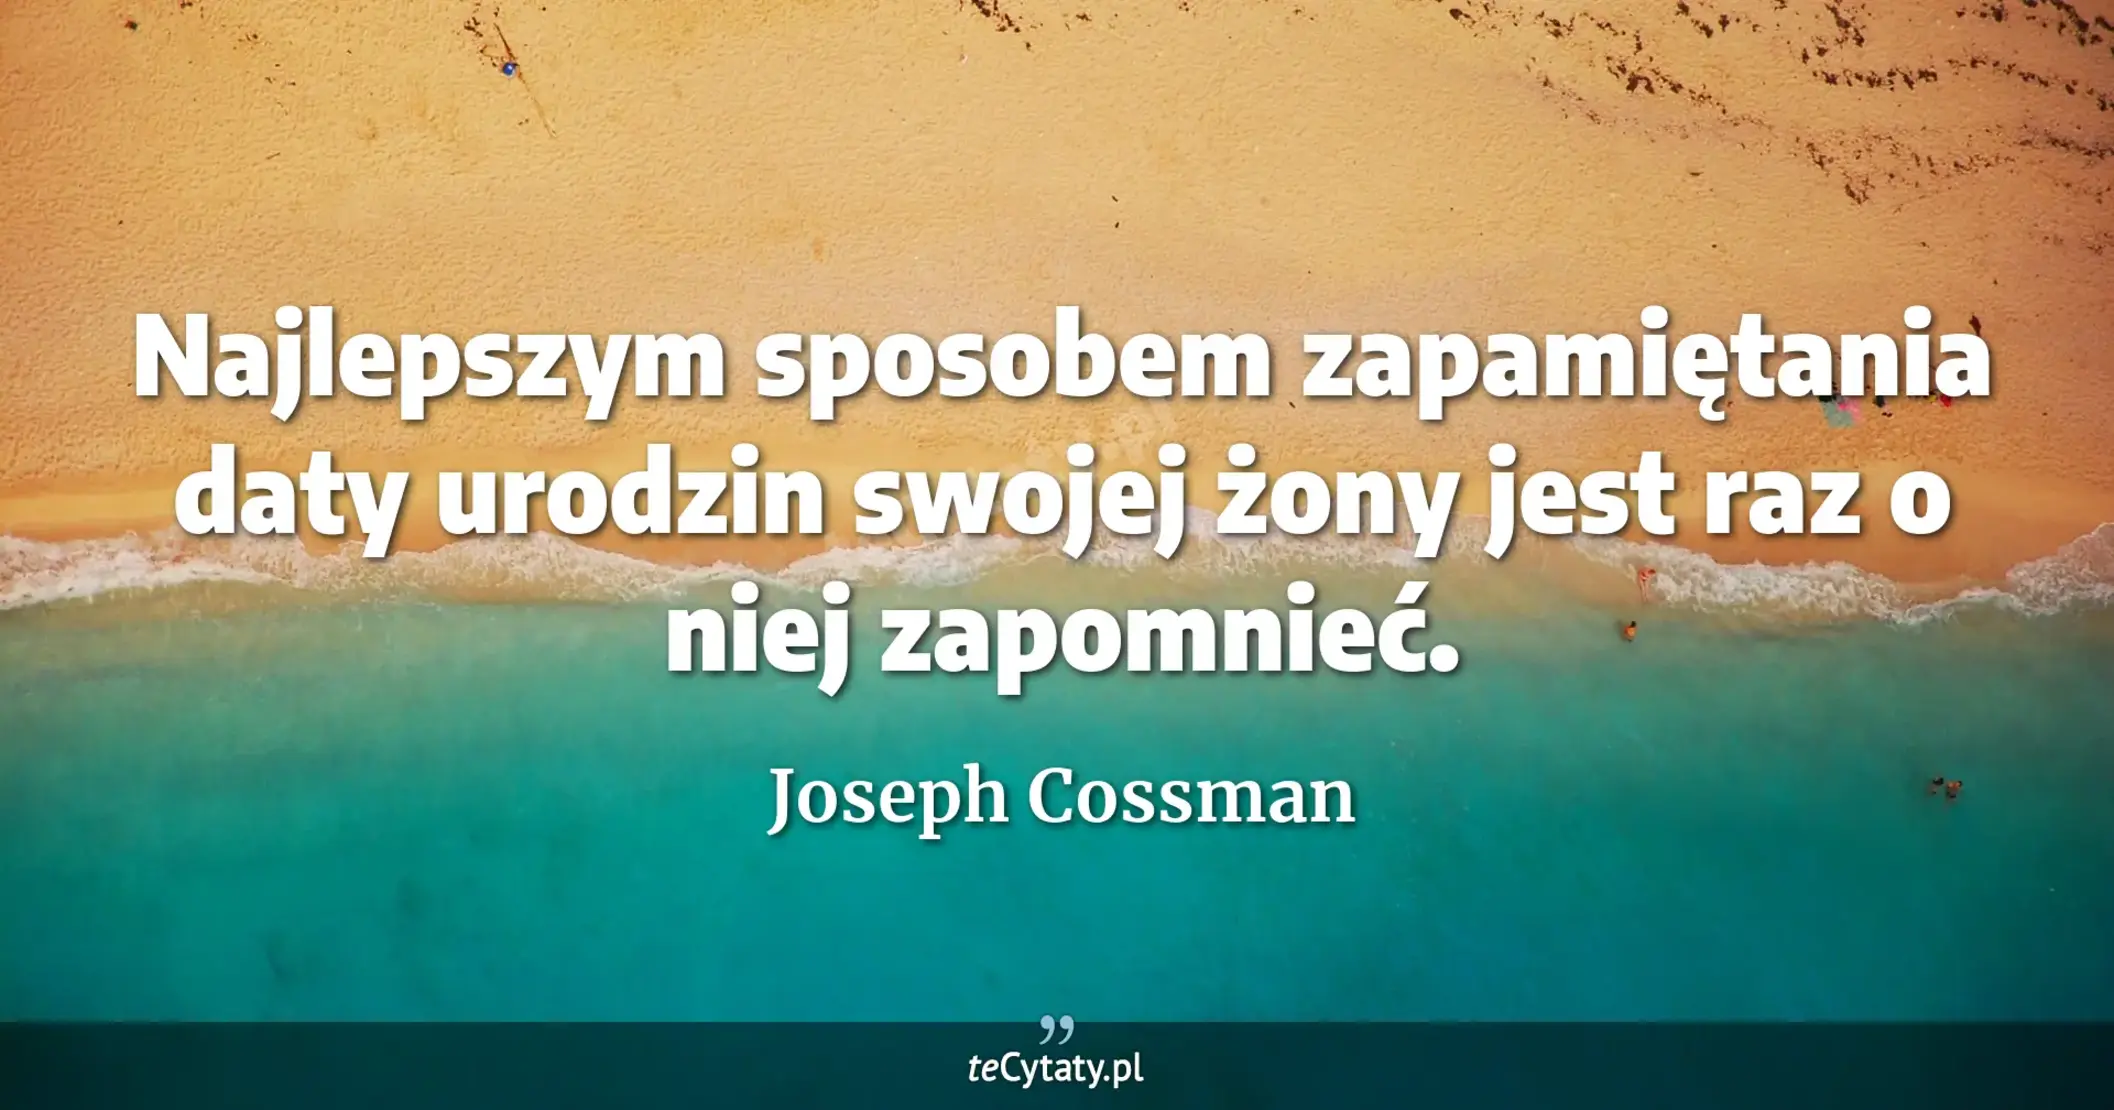 Najlepszym sposobem zapamiętania daty urodzin swojej żony jest raz o niej zapomnieć. - Joseph Cossman